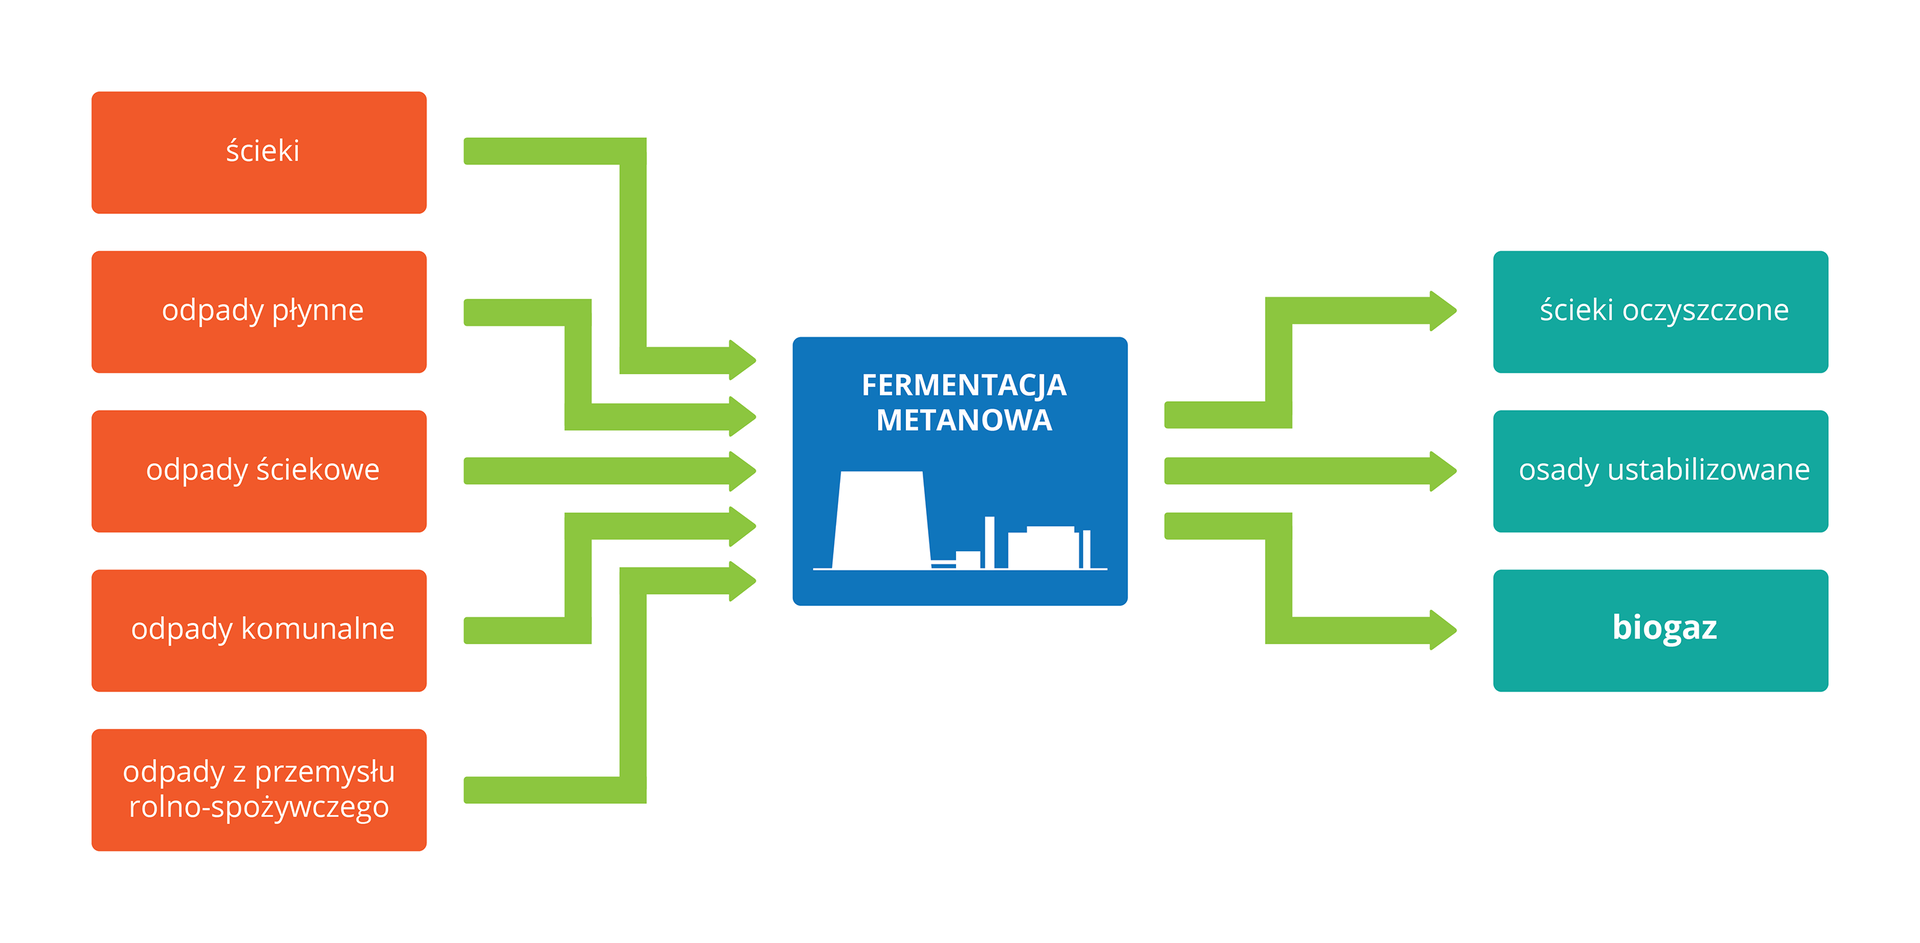 Ilustracja w formie schematu blokowego przedstawia znaczenie fermentacji metanowej. W centrum niebieski czworokąt z białą sylwetką urządzeń przemysłowych, opisany: fermentacja metanowa. Po lewej czerwone prostokąty, oznaczające różne rodzaje odpadów, doprowadzanych do urządzeń. Zielone strzałki prowadzą w prawo do błękitnych prostokątów, oznaczających uzyskane efekty. Jednym z nich jest biogaz.